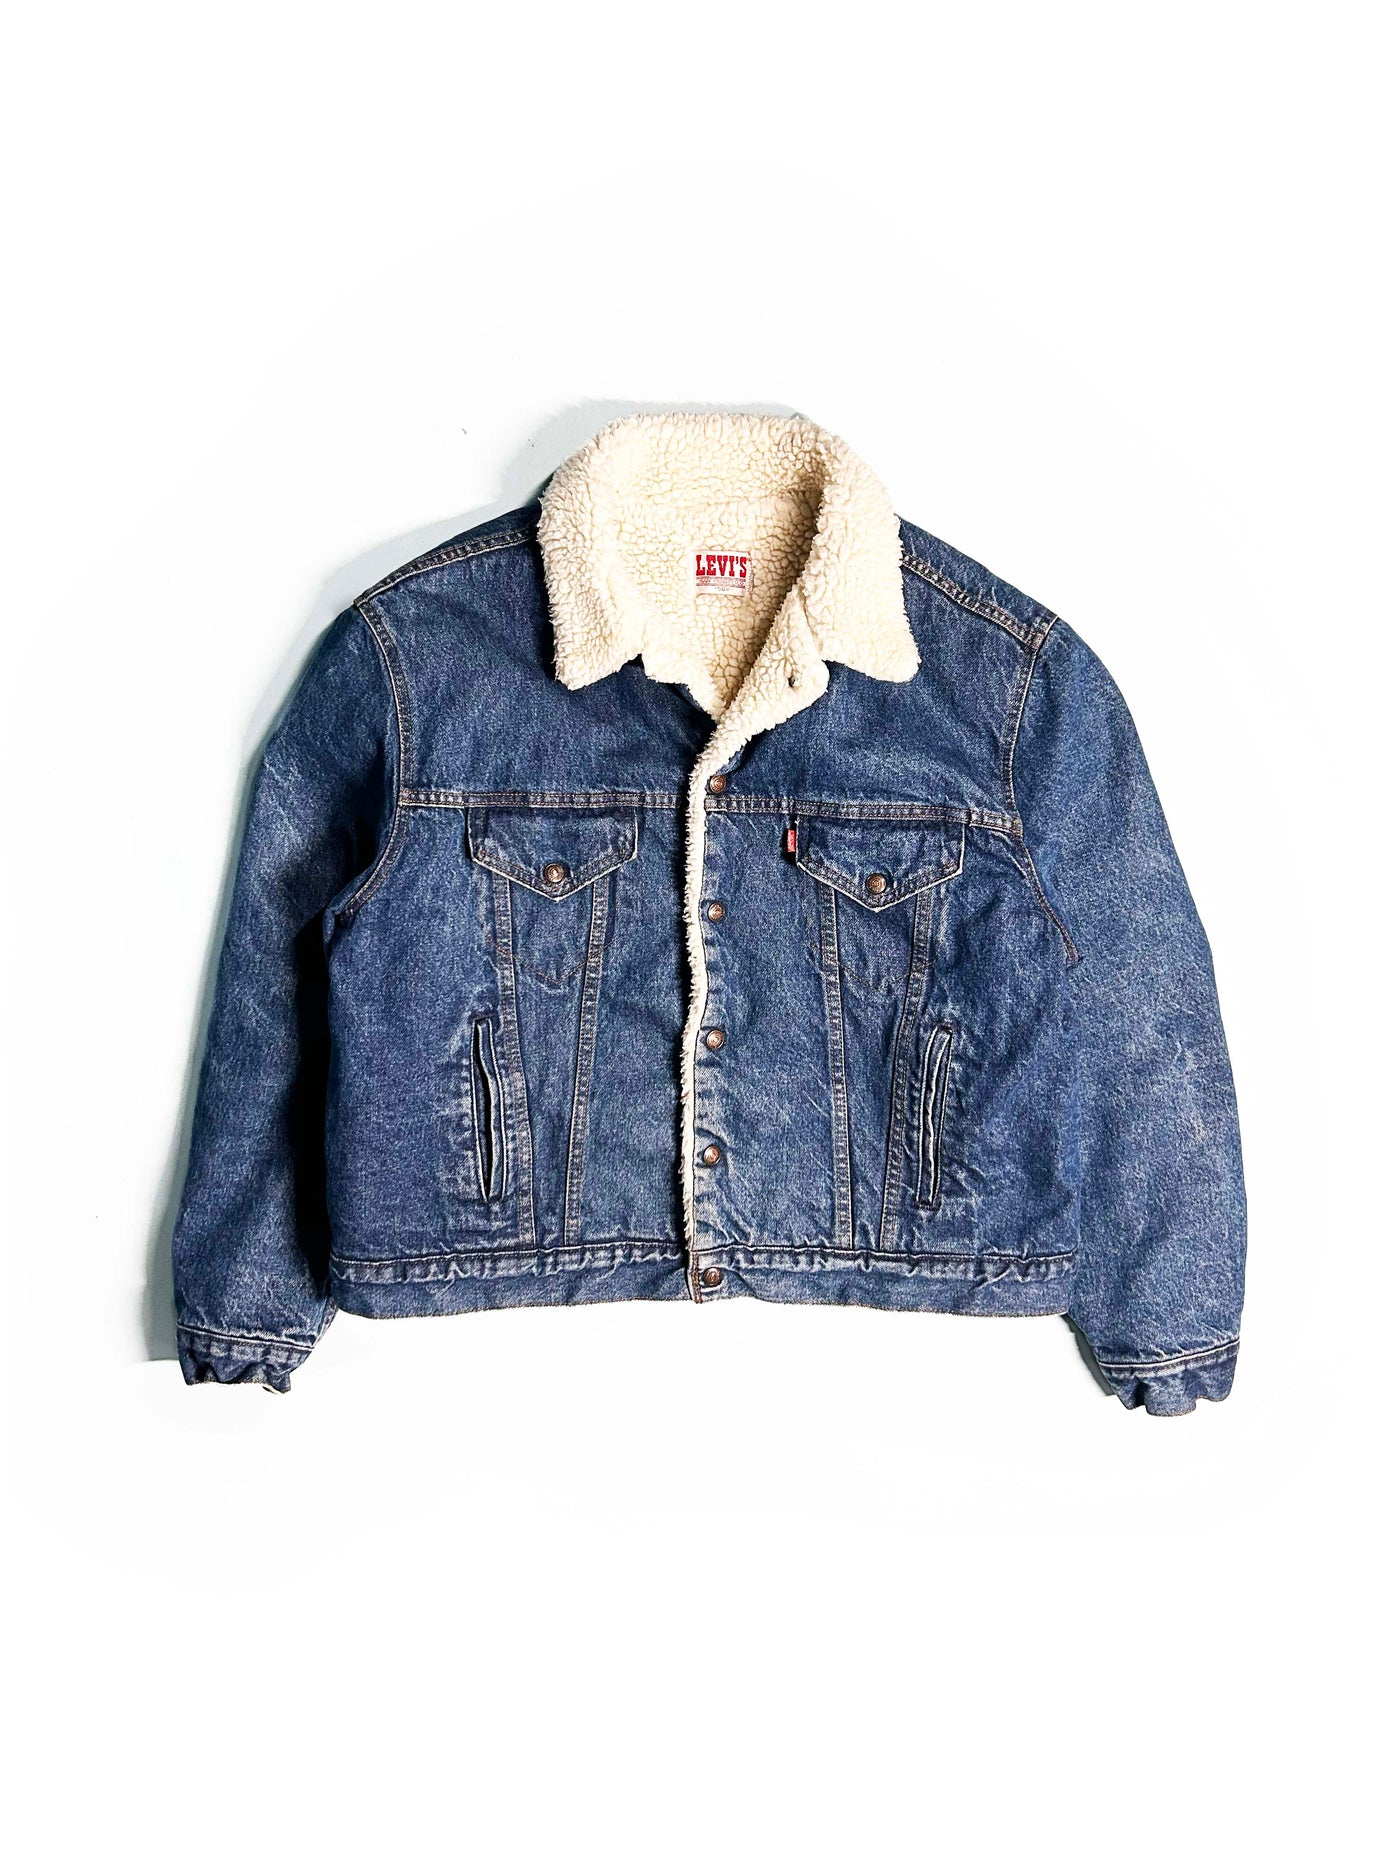 Vintage 80s Levi’s San Francisco Lined Denim Jacket